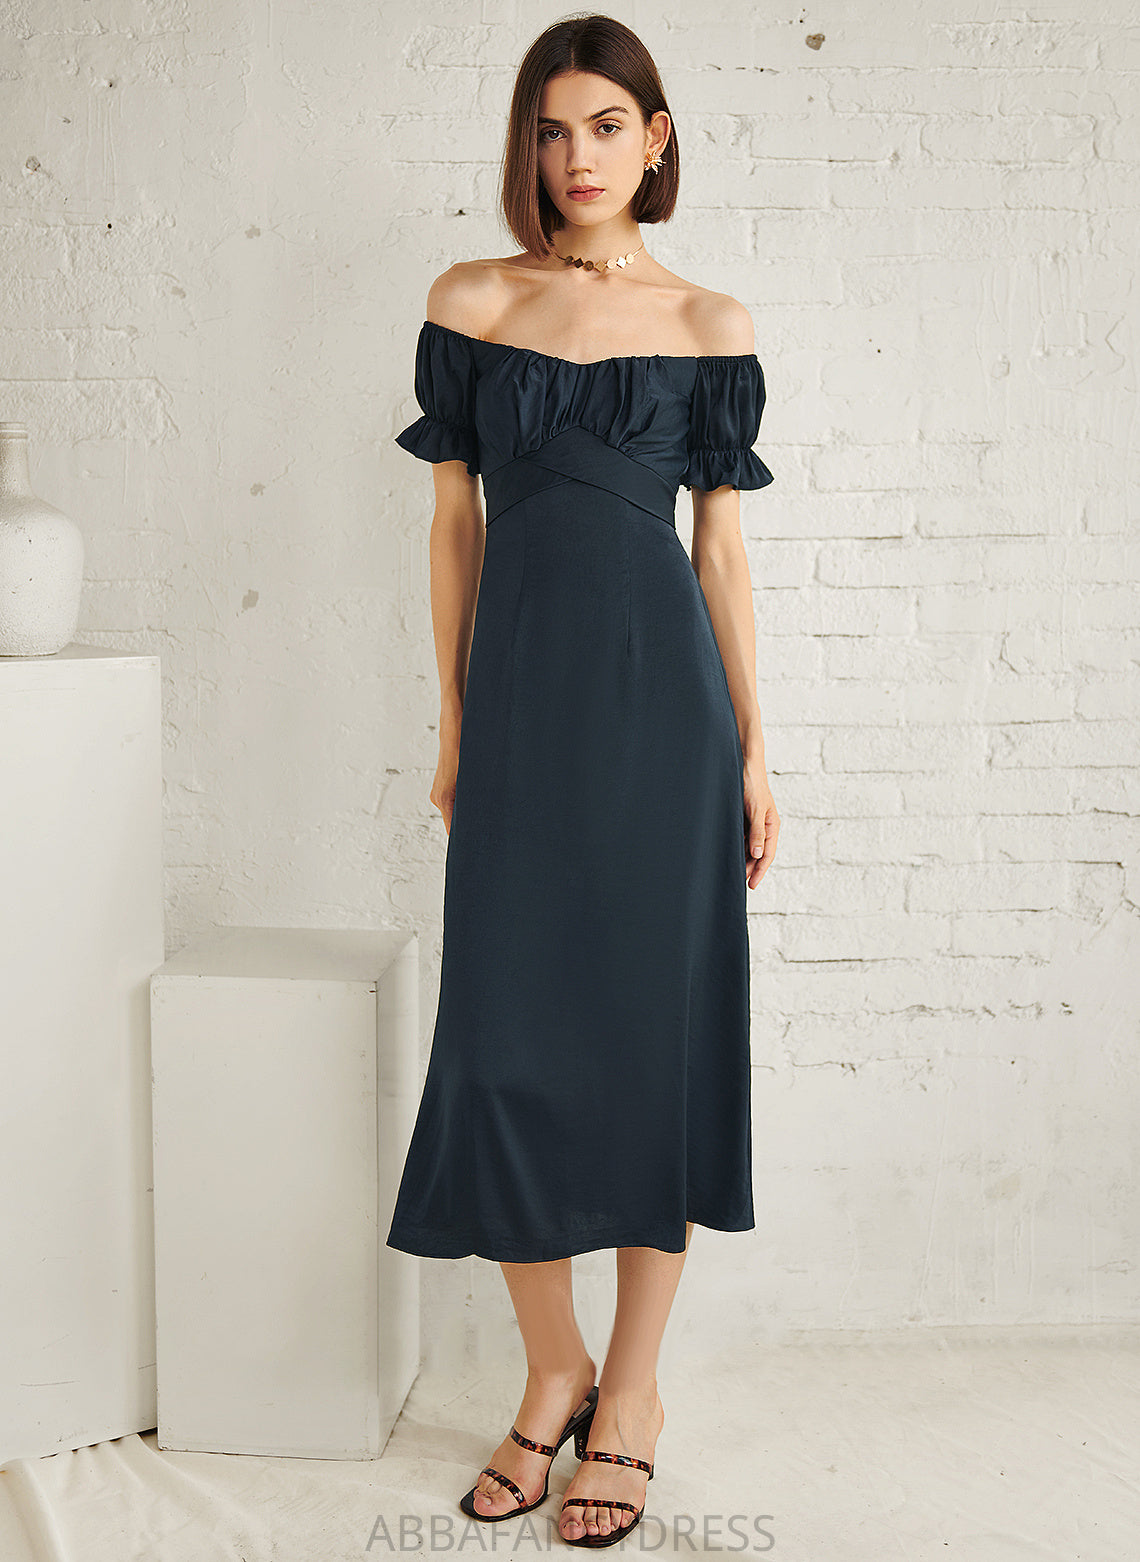 Cotton Dress Lauren Off-the-Shoulder Cocktail Dresses A-Line Cocktail Tea-Length Blends